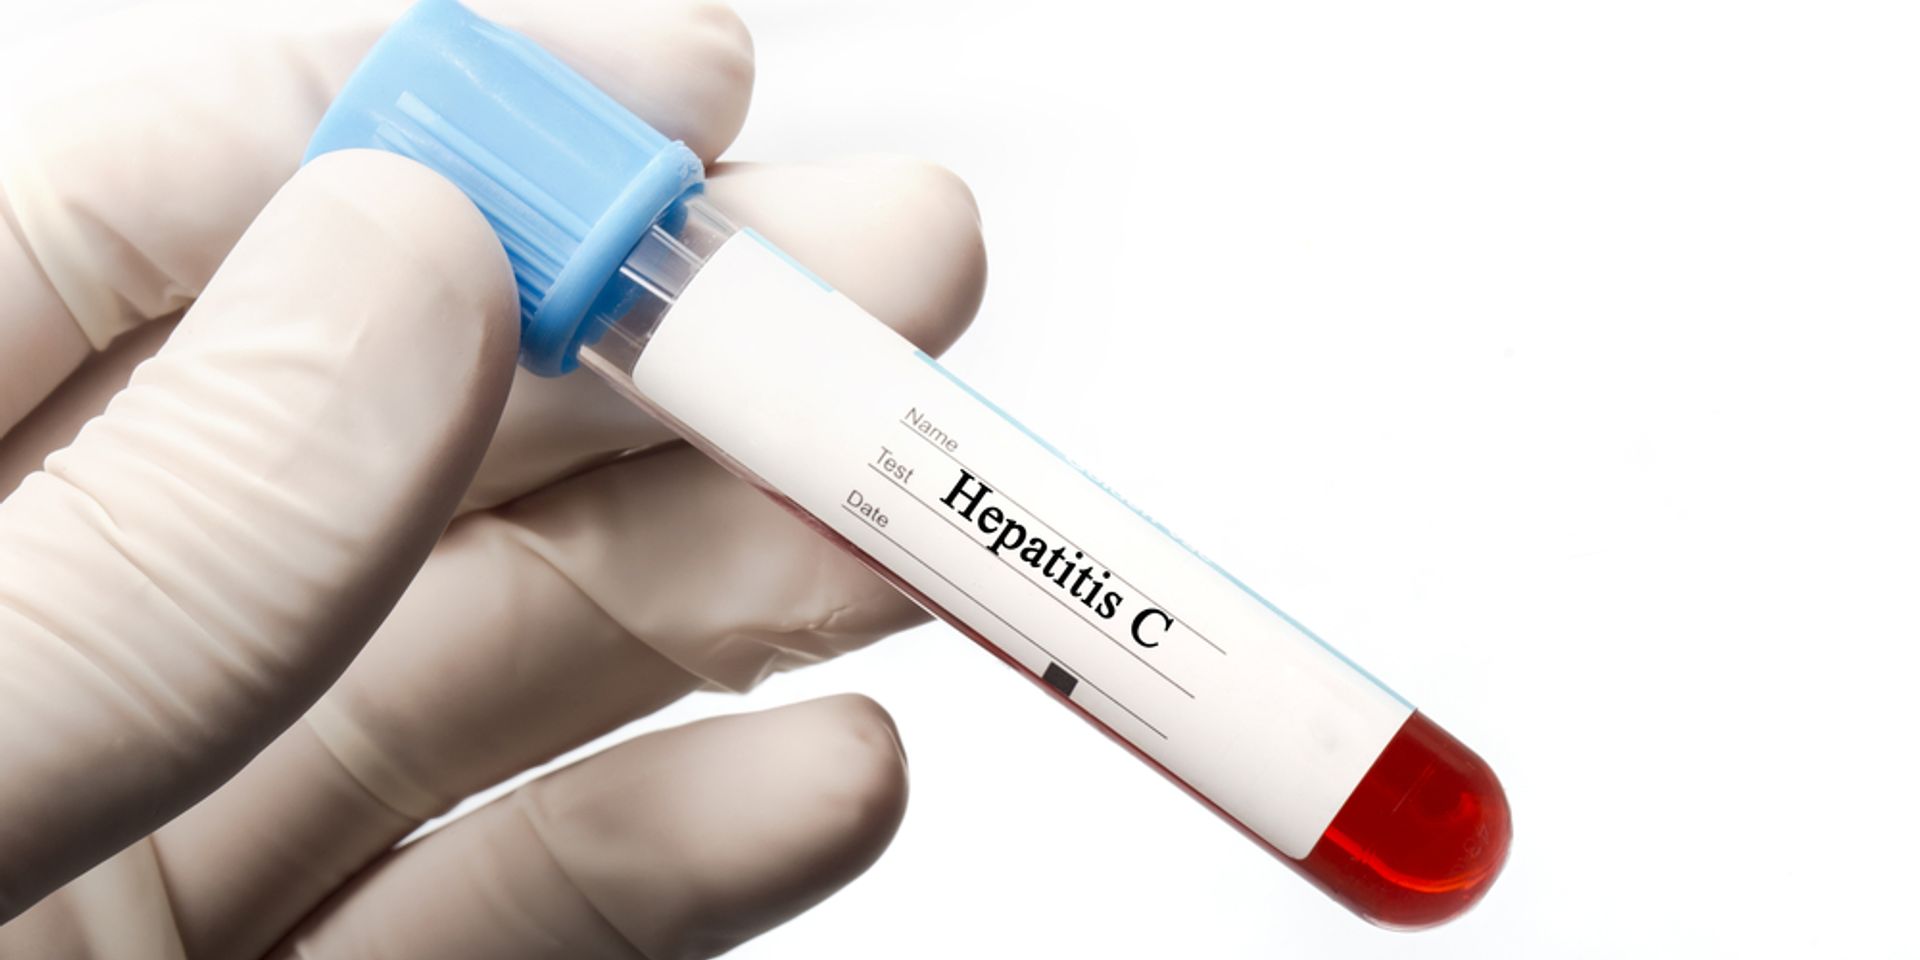 Ingyenes hepatitis C-szűrés lesz az ország több városában